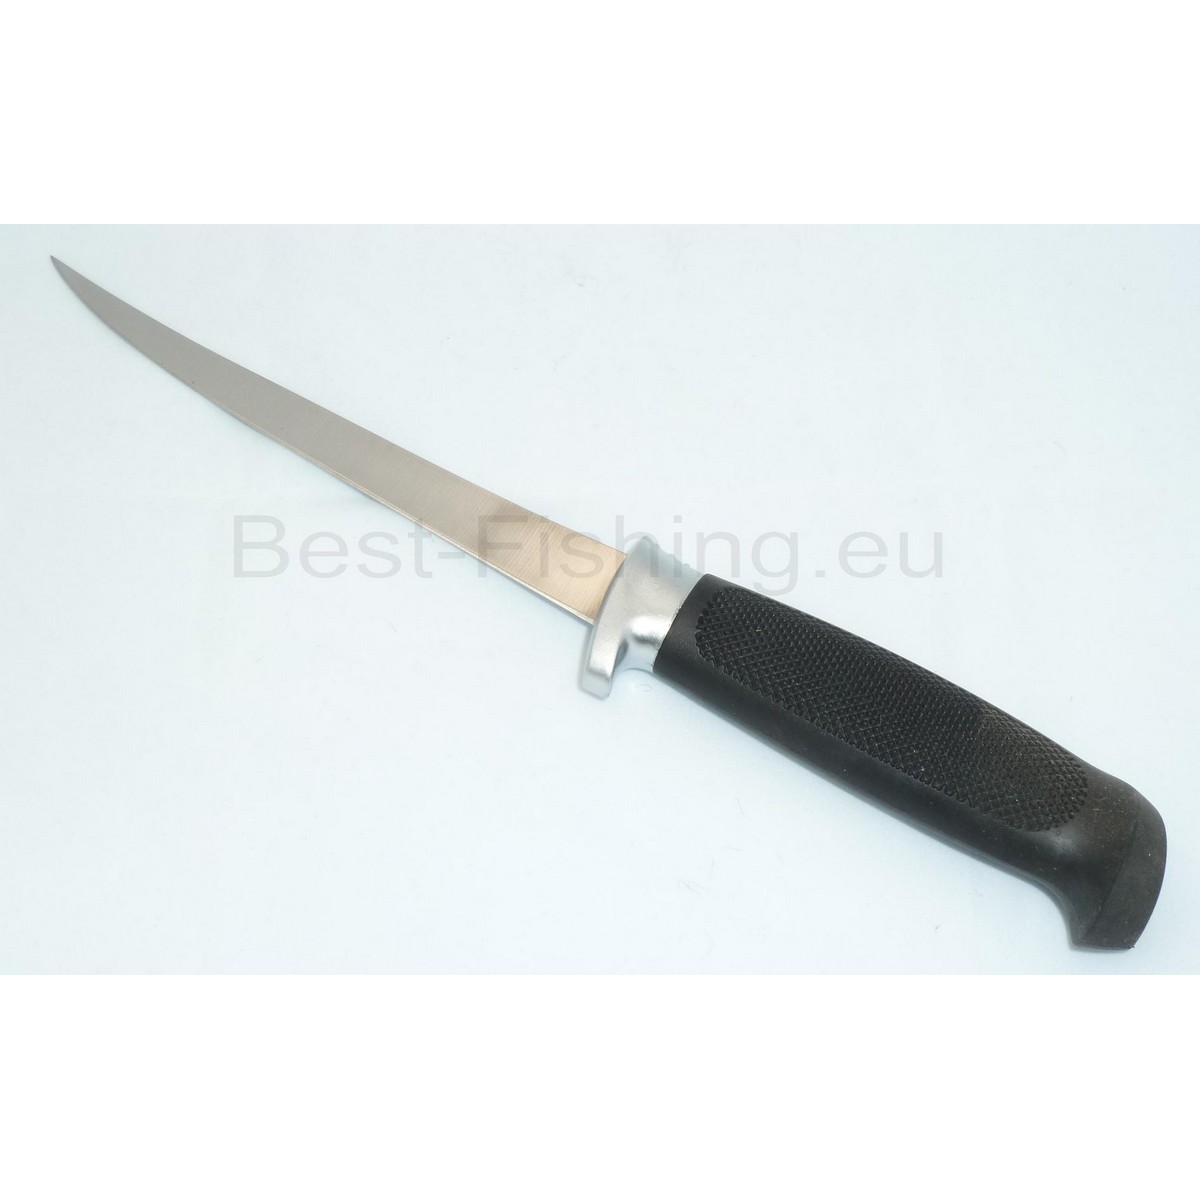 Рибарски нож AJ-FT024 - Jaxon-0